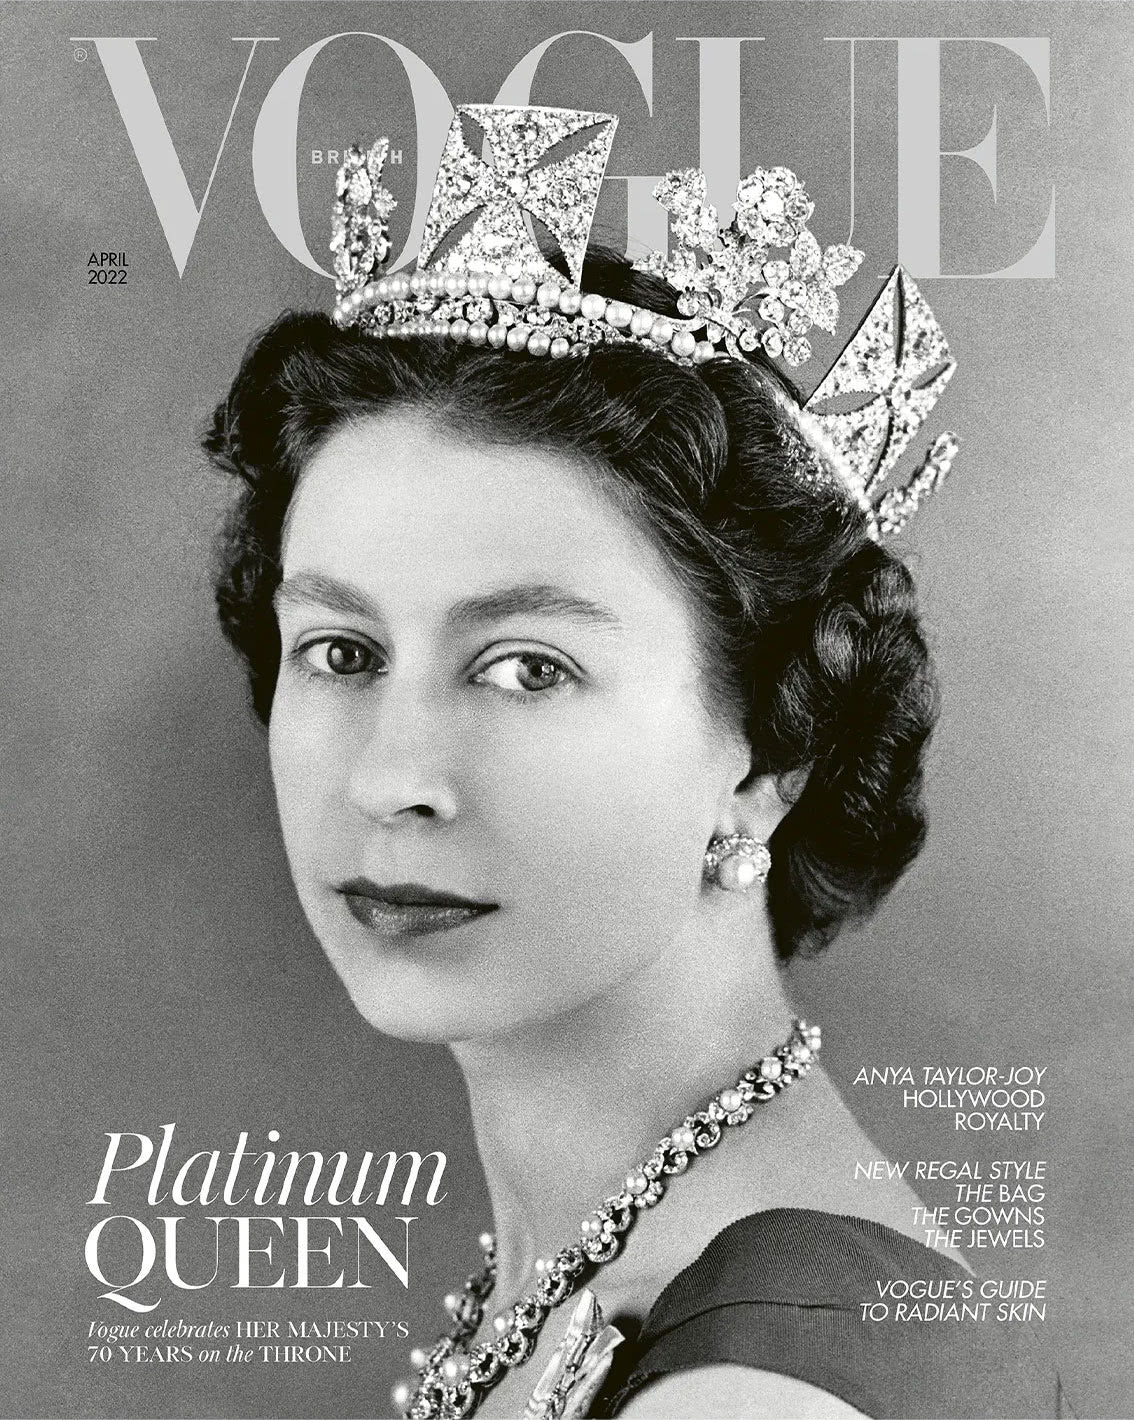 Vogue April 2022 cover